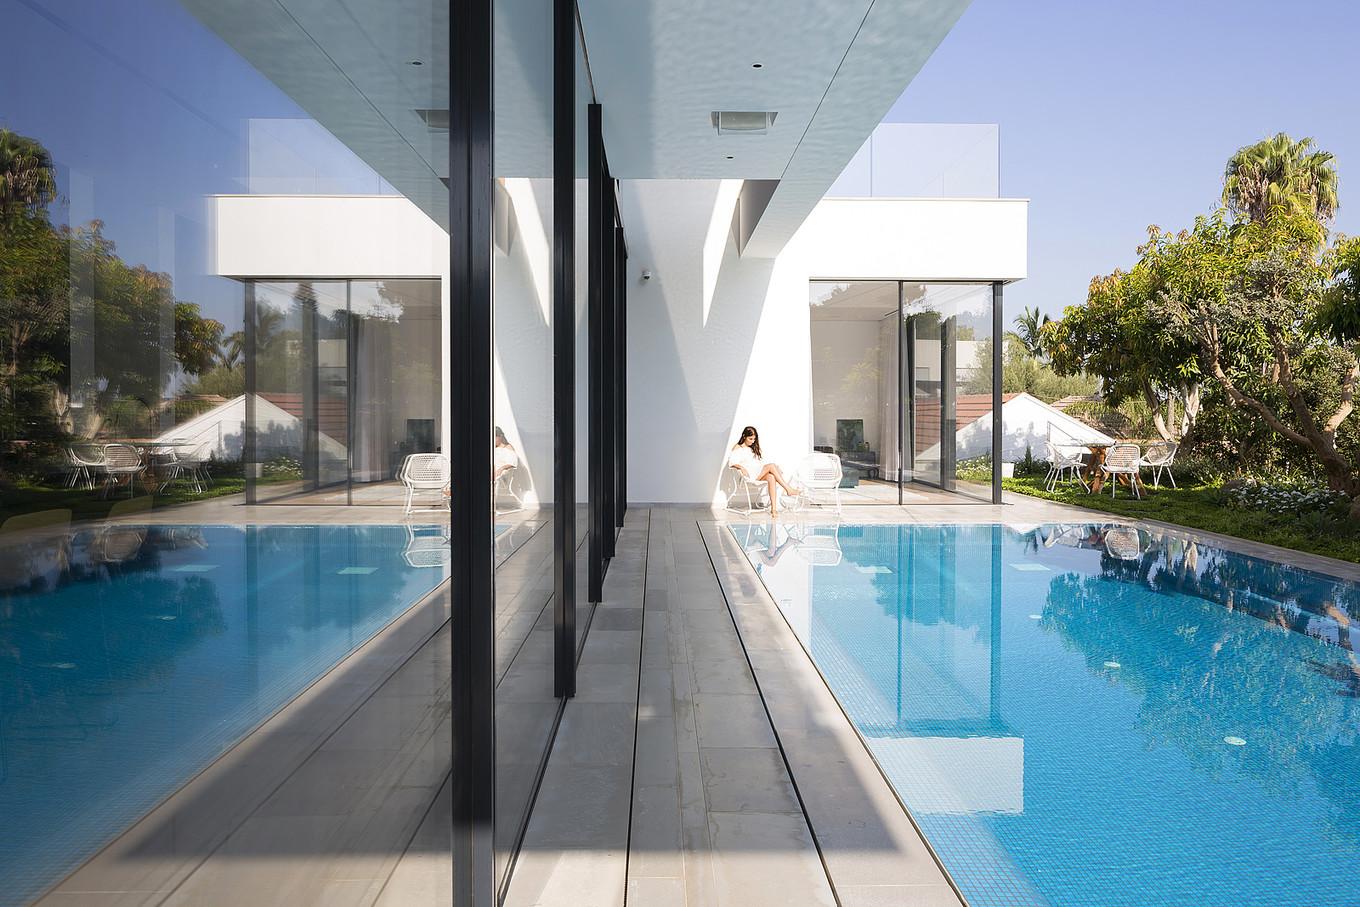 Под стеклом: Панорамный дом с бассейном в Израиле (ФОТО)